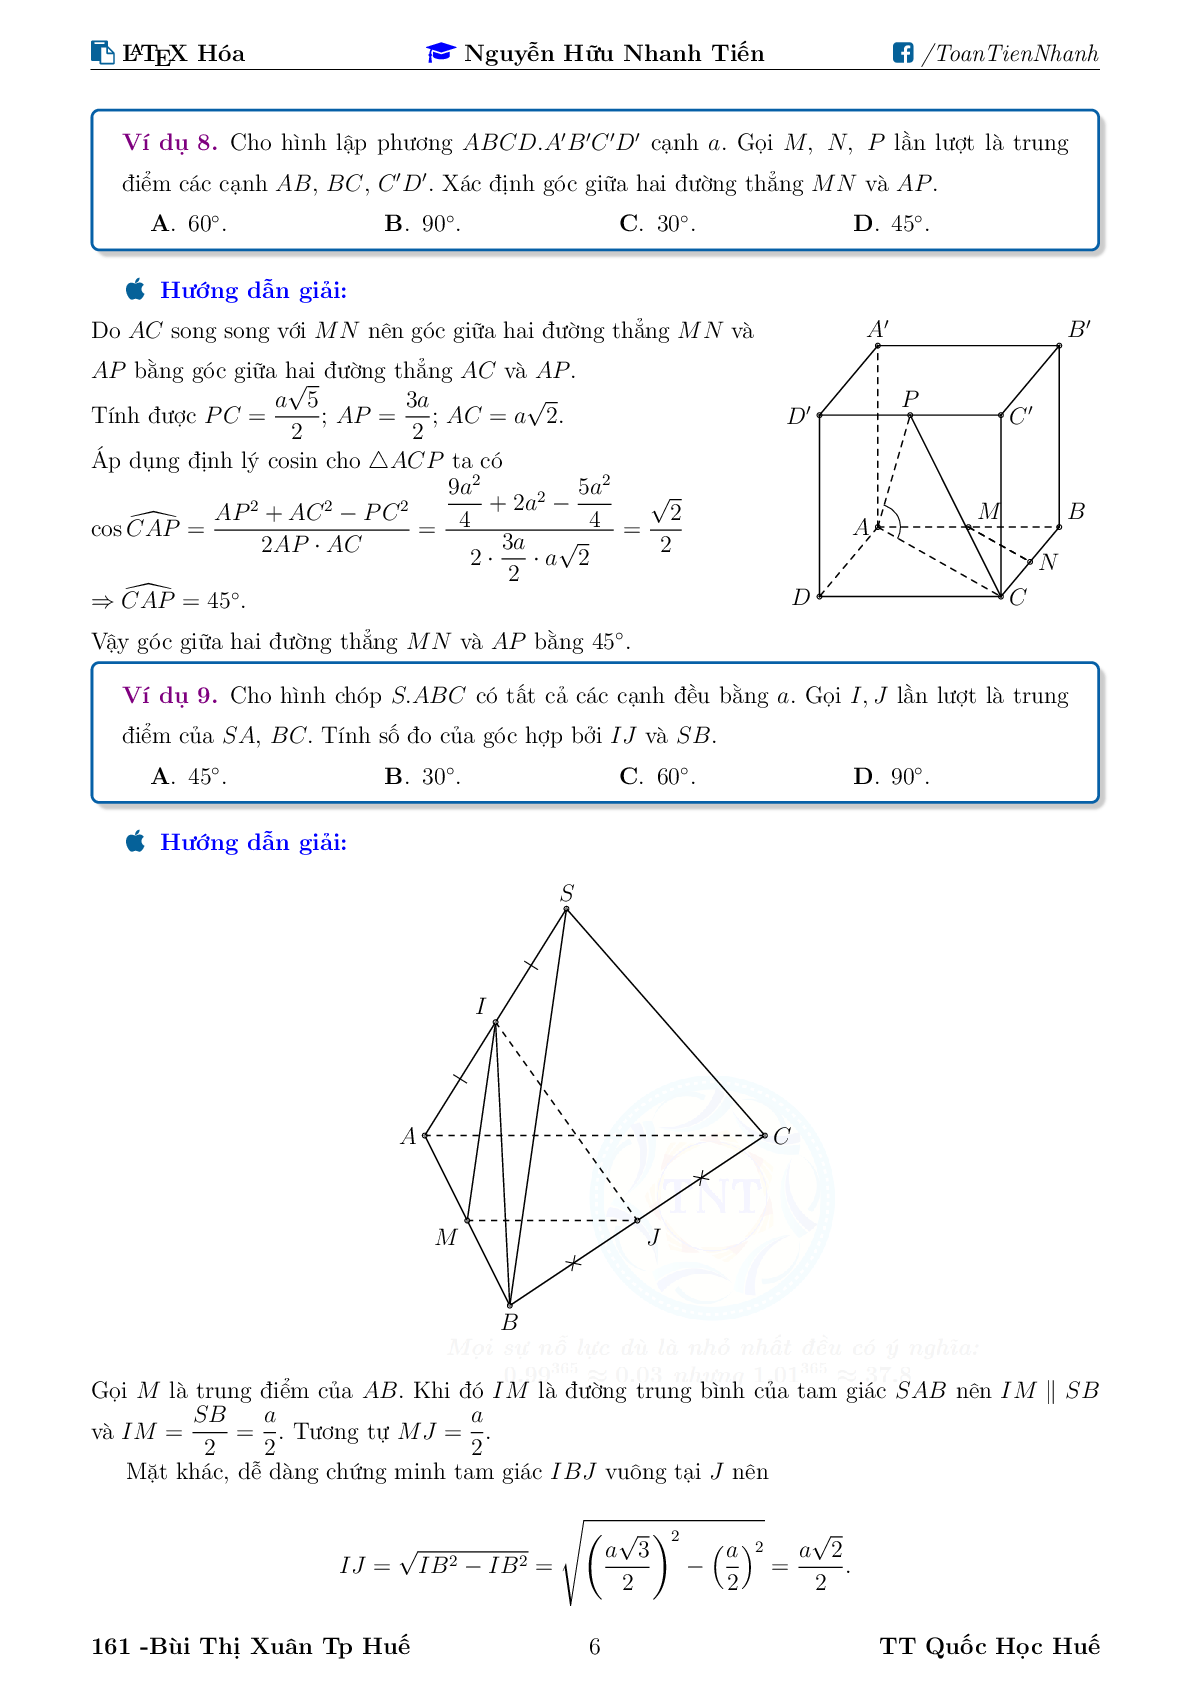 Chuyên đề về góc và khoảng cách trong không gian (trang 6)